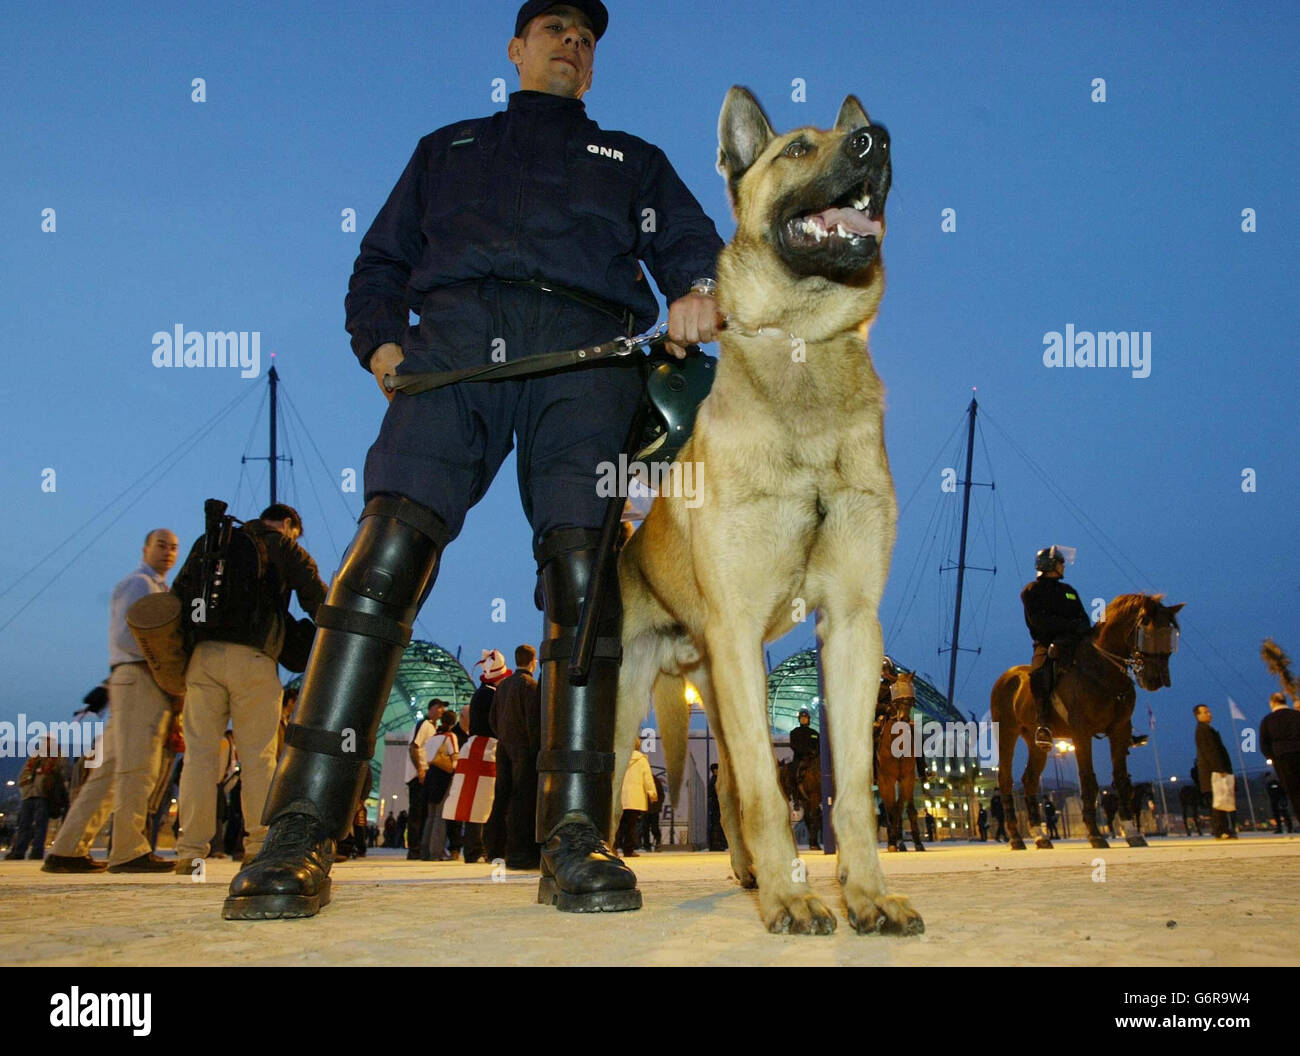 Mitglieder der portugiesischen Polizei im Algarve-Stadion in Faro vor dem heutigen, freundlichen internationalen Fußballspiel zwischen Portugal und England. Stockfoto